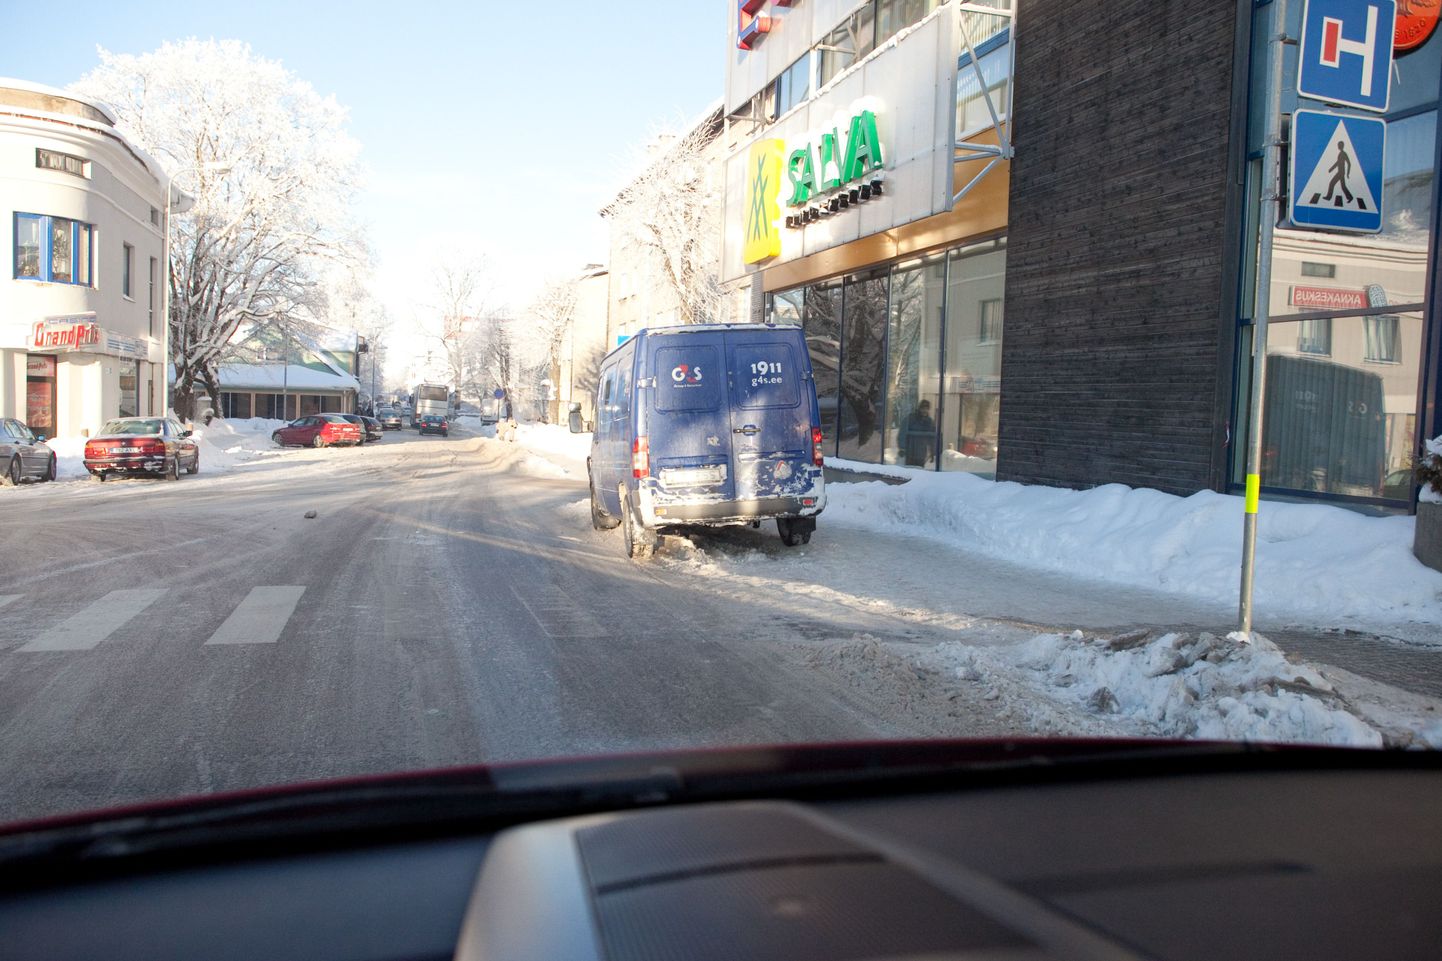 Swedbanki esine valmistab tõsist peavalu liikluskorraldajatele. Jalakäijate ohutuse tagamiseks ei saa lubada tänava paremas servas parkimist, ehkki G4Si autod seal pahatihti seisavad.